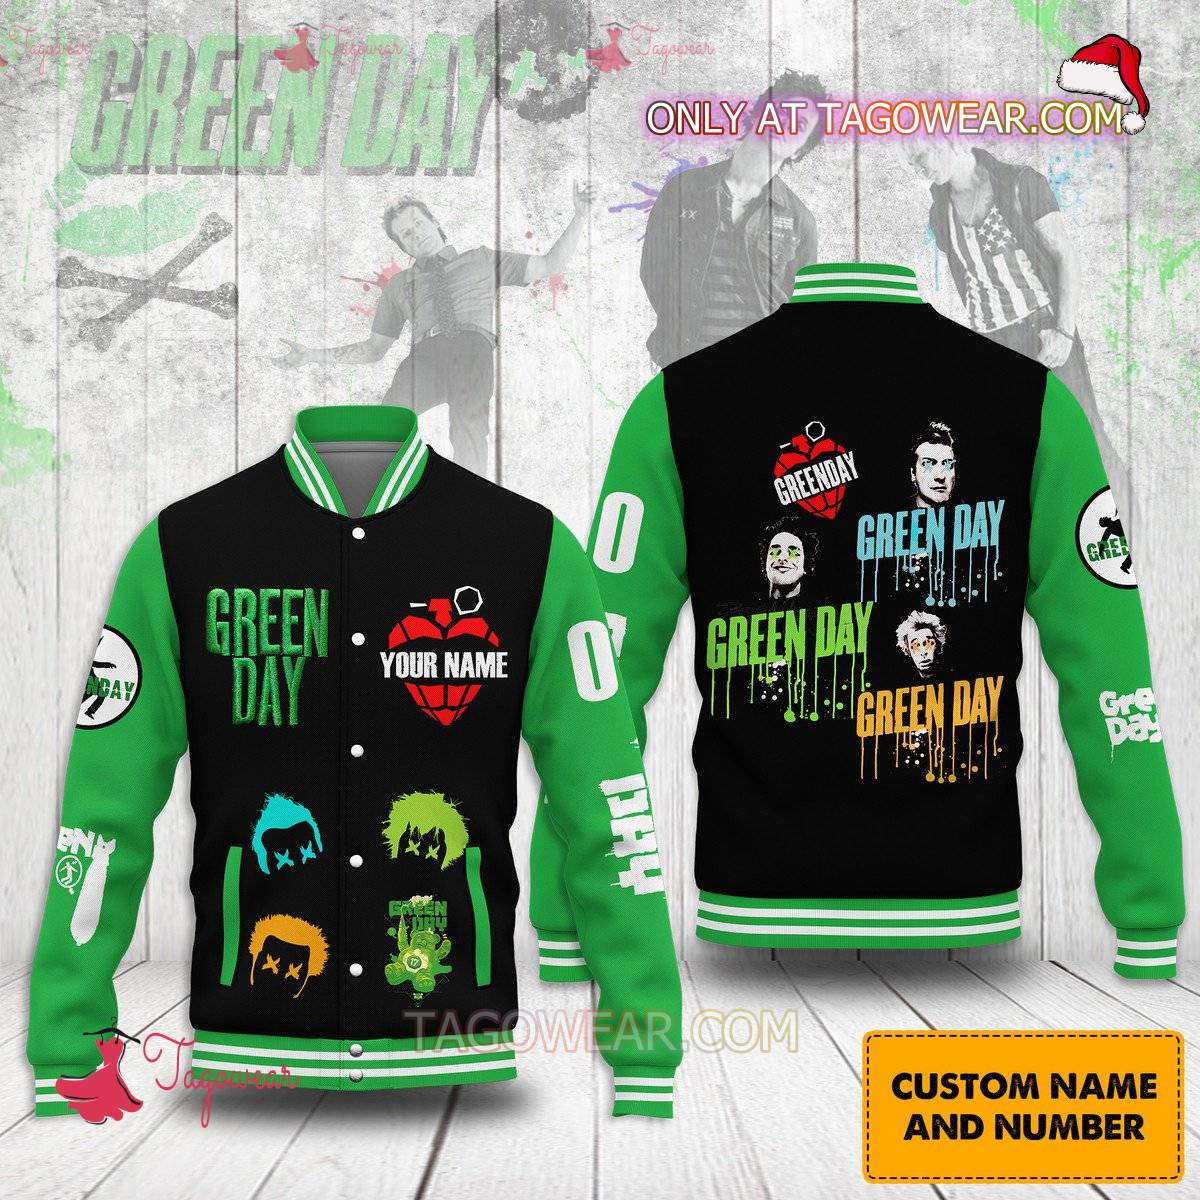 Green Day Personalized Baseball Jacket